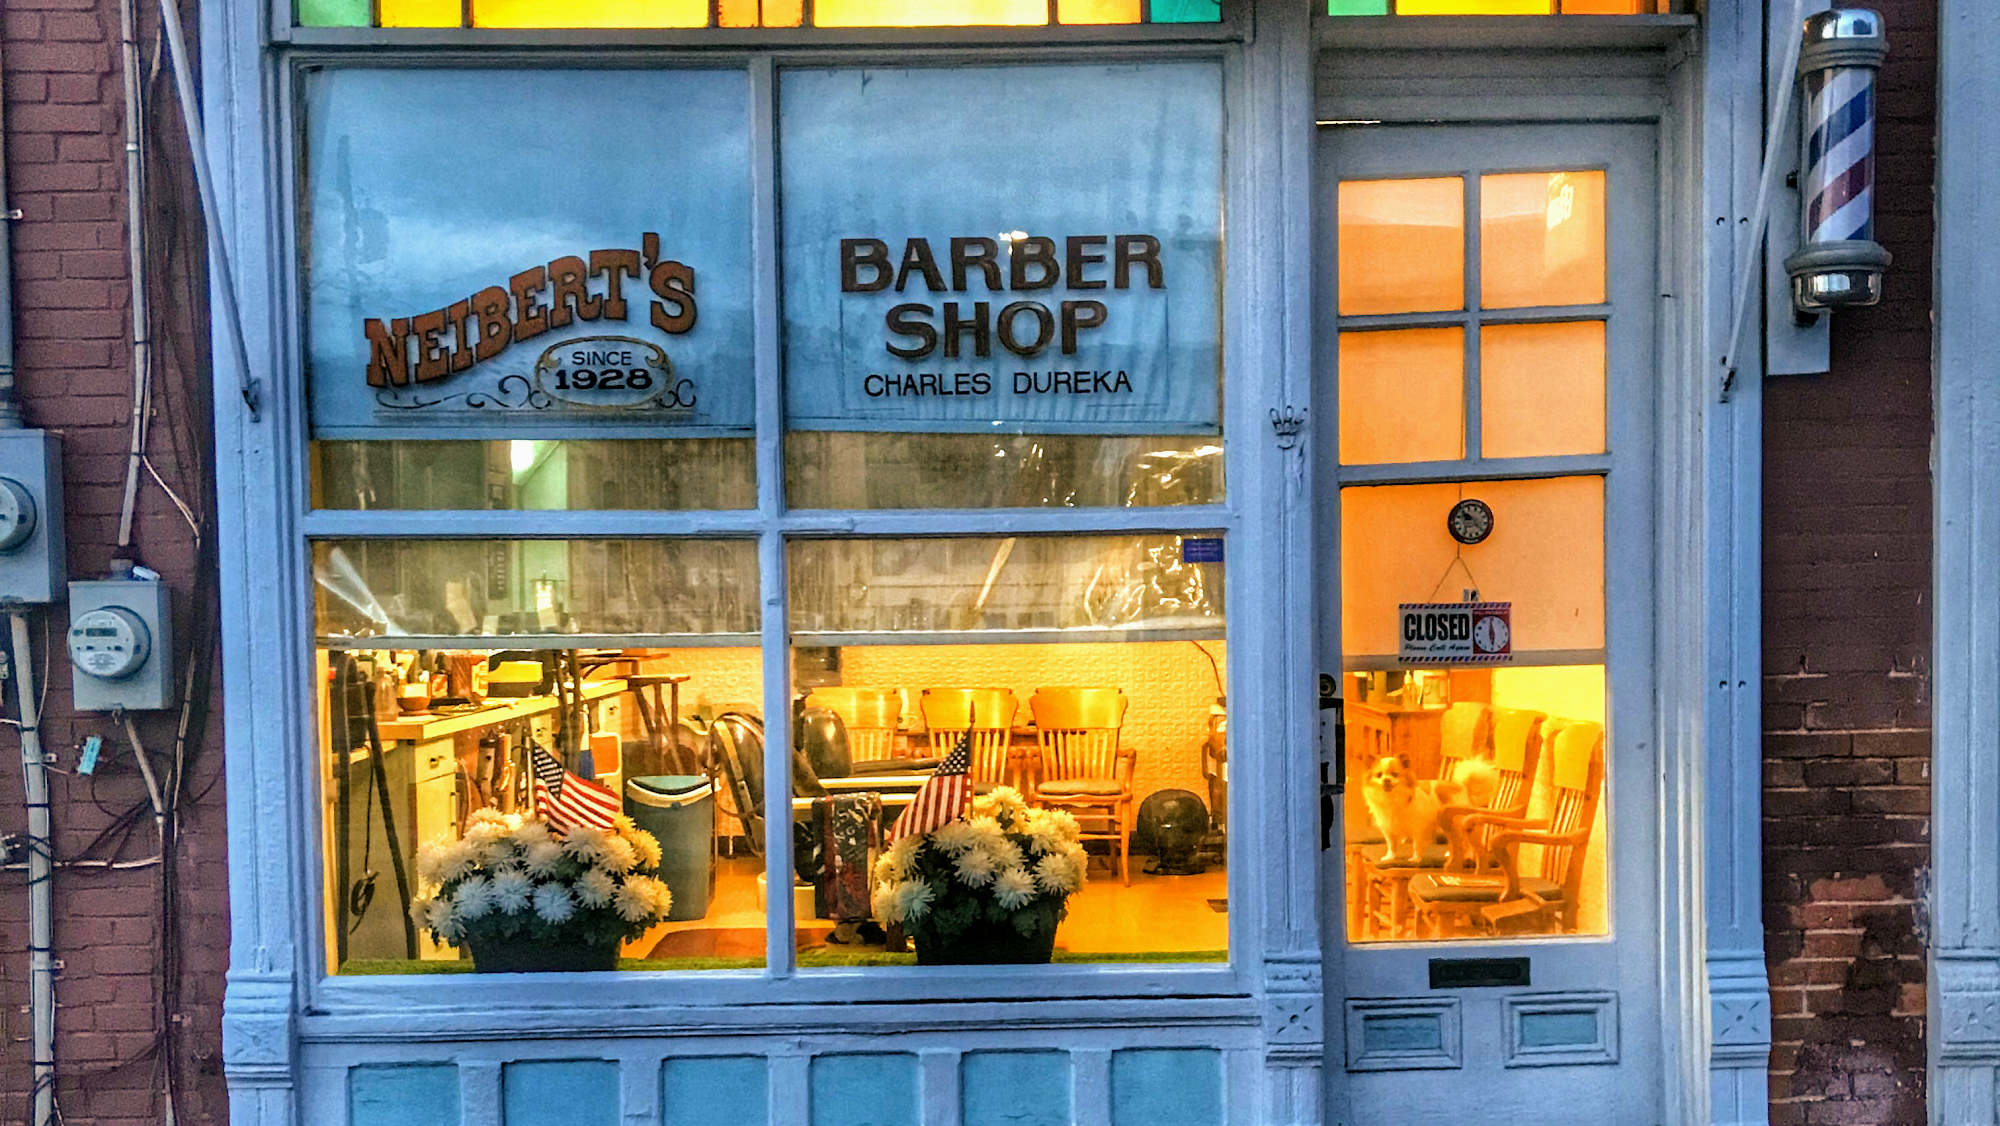 Neibert's Barber Shop